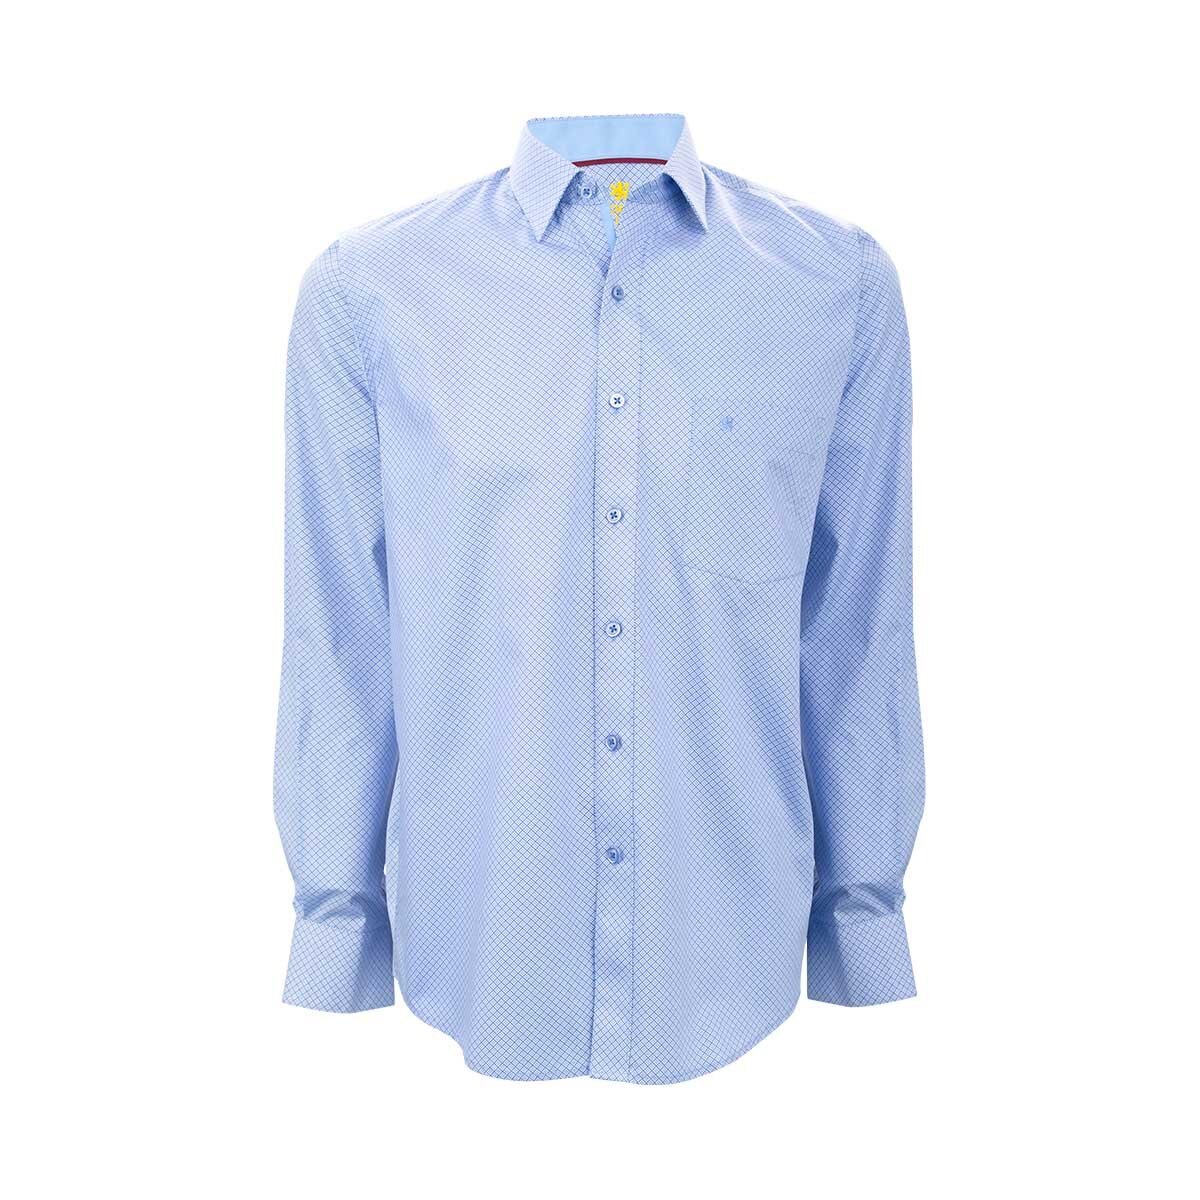 Download Camisa de vestir con estampado azul para caballero manchester - Sears